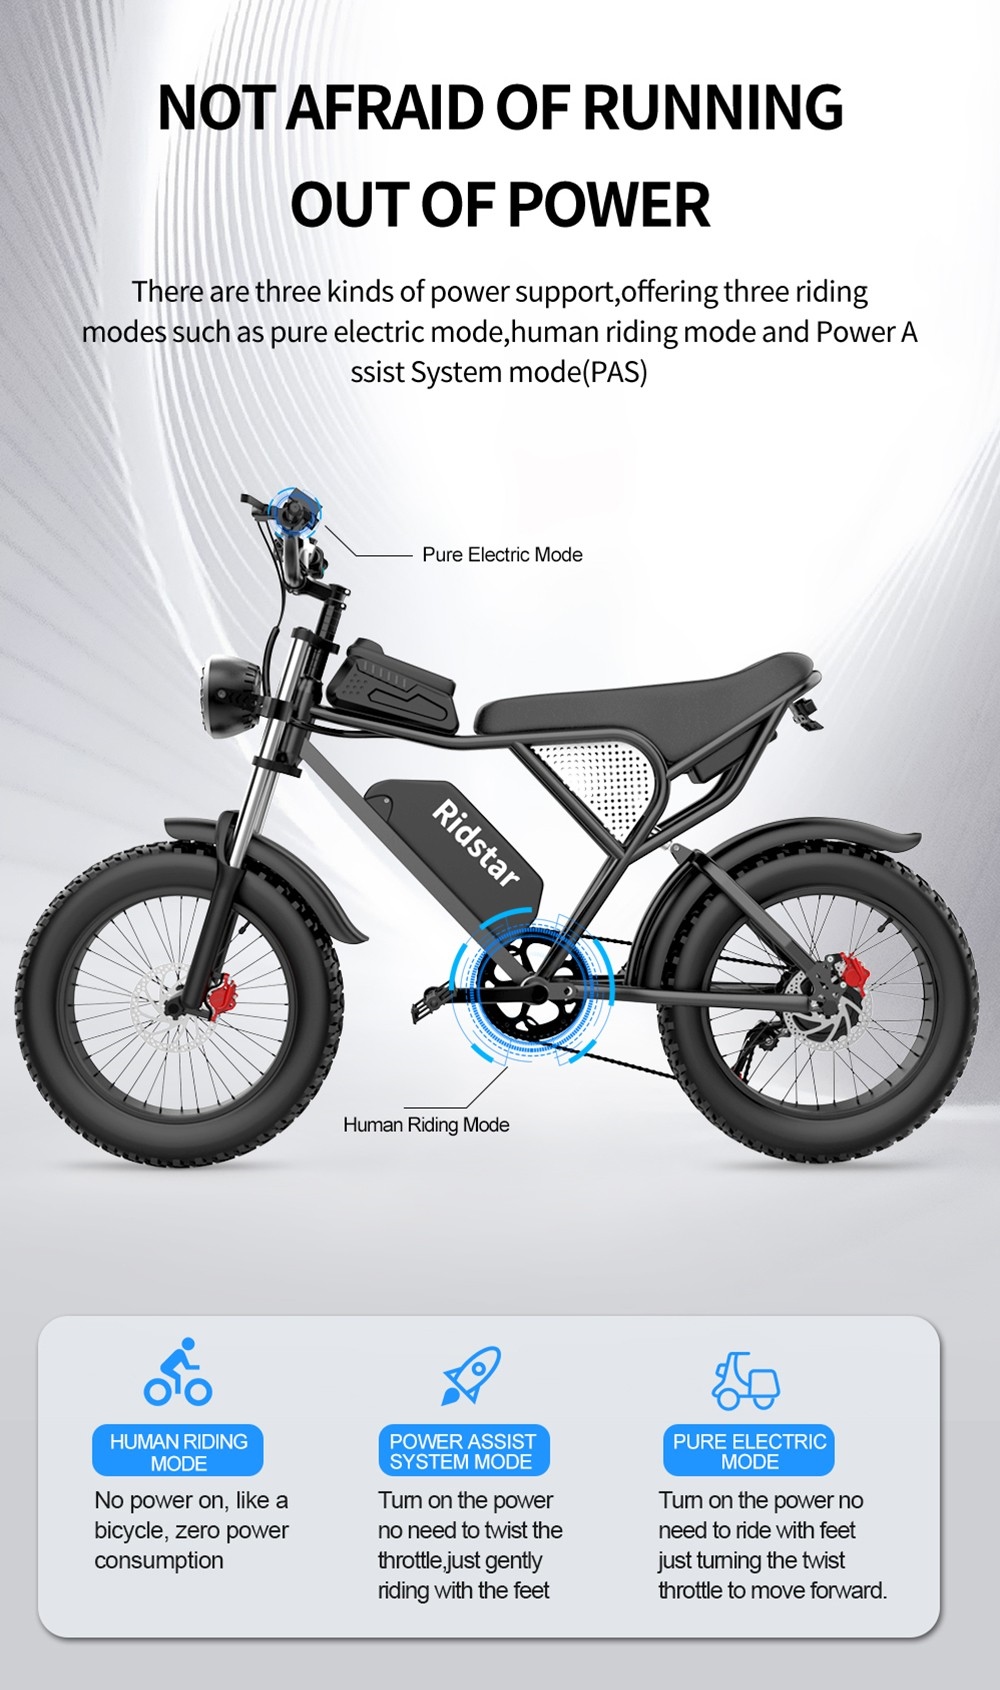 Ηλεκτρικό ποδήλατο Ridstar Q20, κινητήρας χωρίς ψήκτρες 1000W 20*4 ιντσών Ελαστικά λιπαρών 48V 20Ah Αφαιρούμενη μπαταρία 30 mph Μέγιστη Ταχύτητα 75 μίλια Μέγιστη εμβέλεια Υδραυλικό Δισκόφρενο